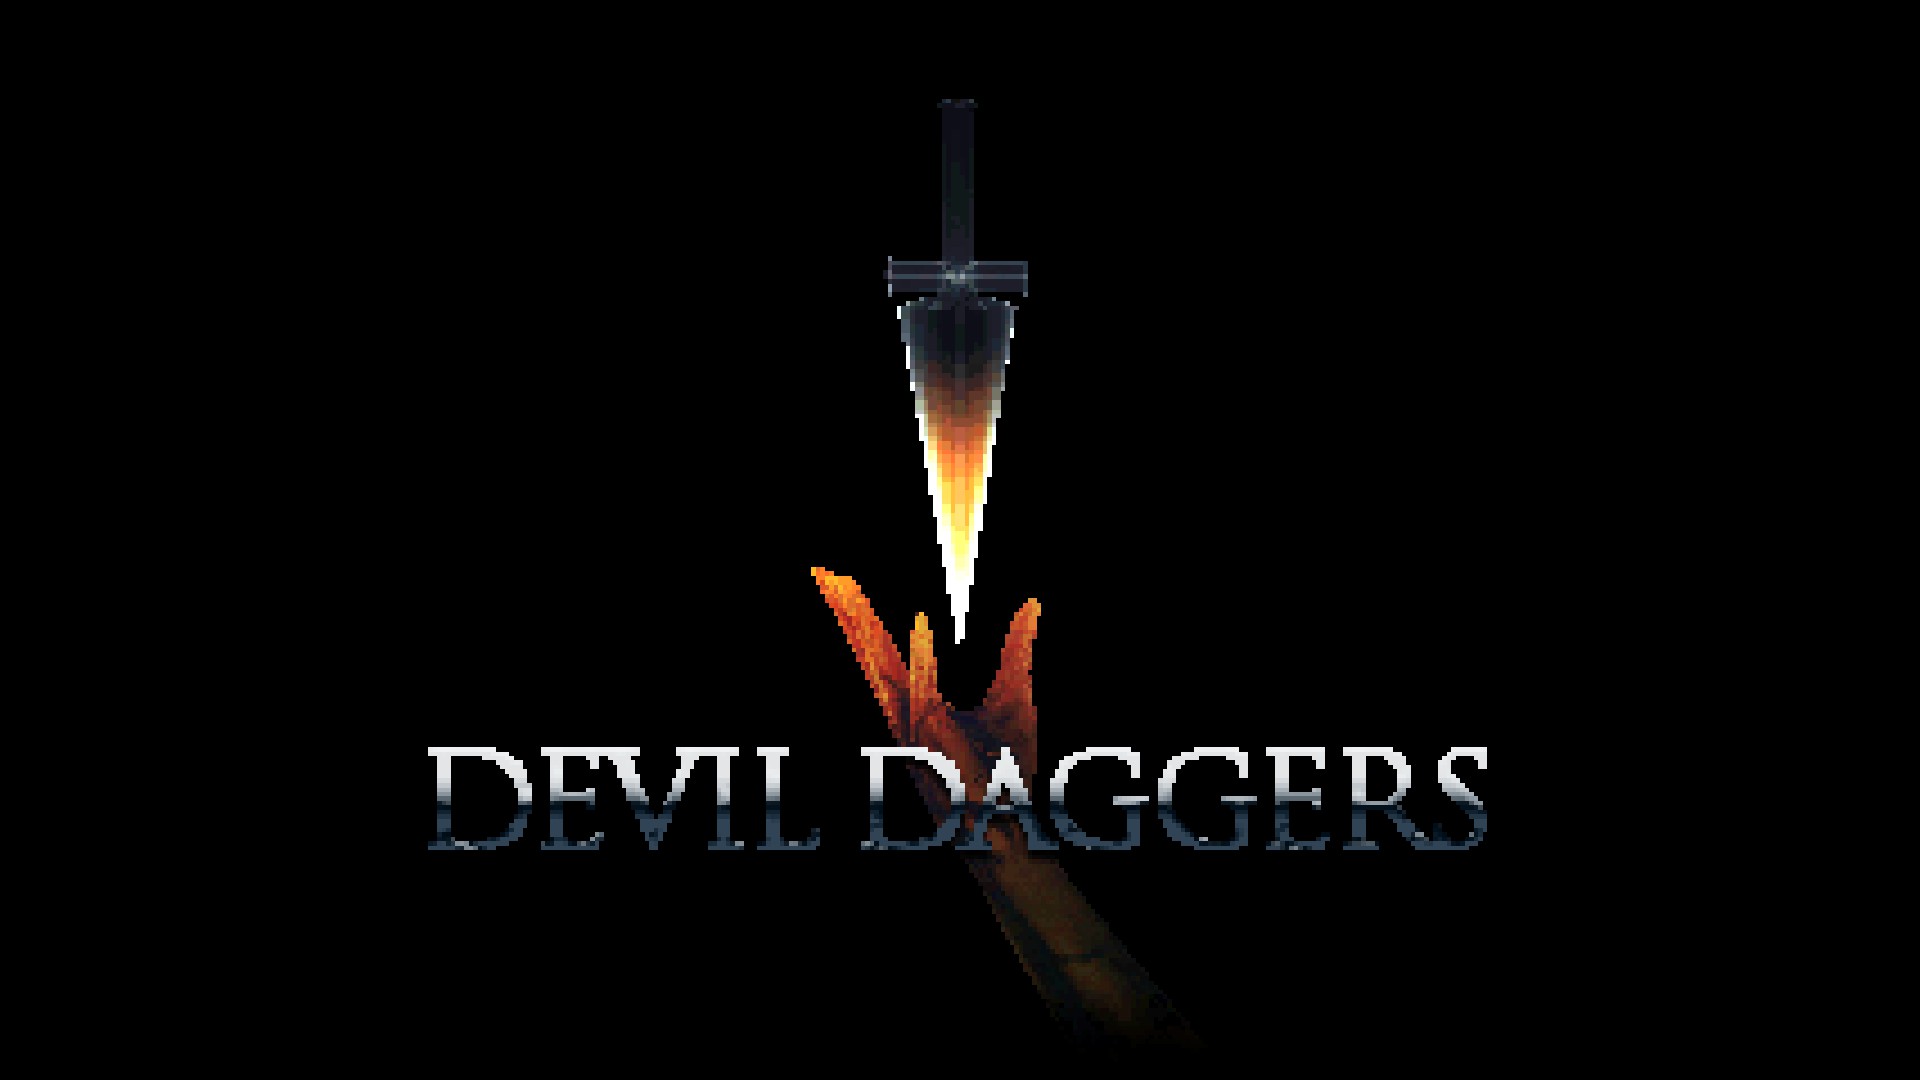 devil daggers reddot